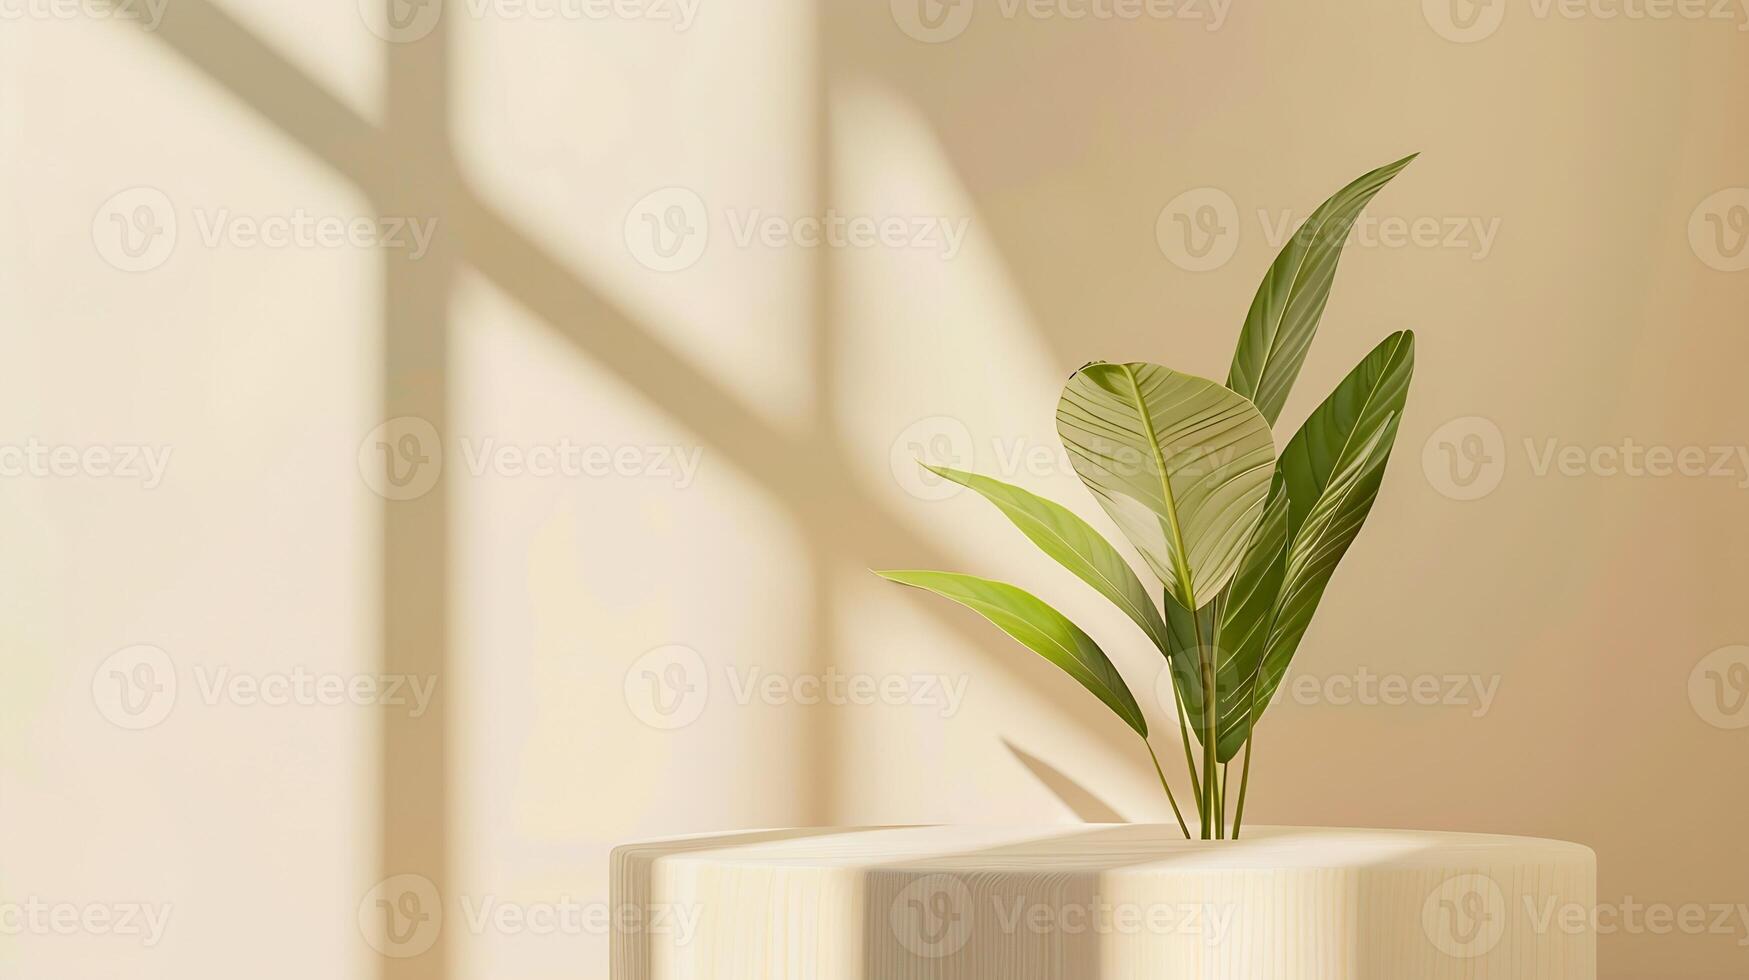 minimal Holz Weiß Podium mit verschwommen Grün Blatt Pflanze auf Beige HintergrundSchönheit kosmetisch natürlich mild Produkt modern AnzeigeNatur Öko freundlich Konzept, foto